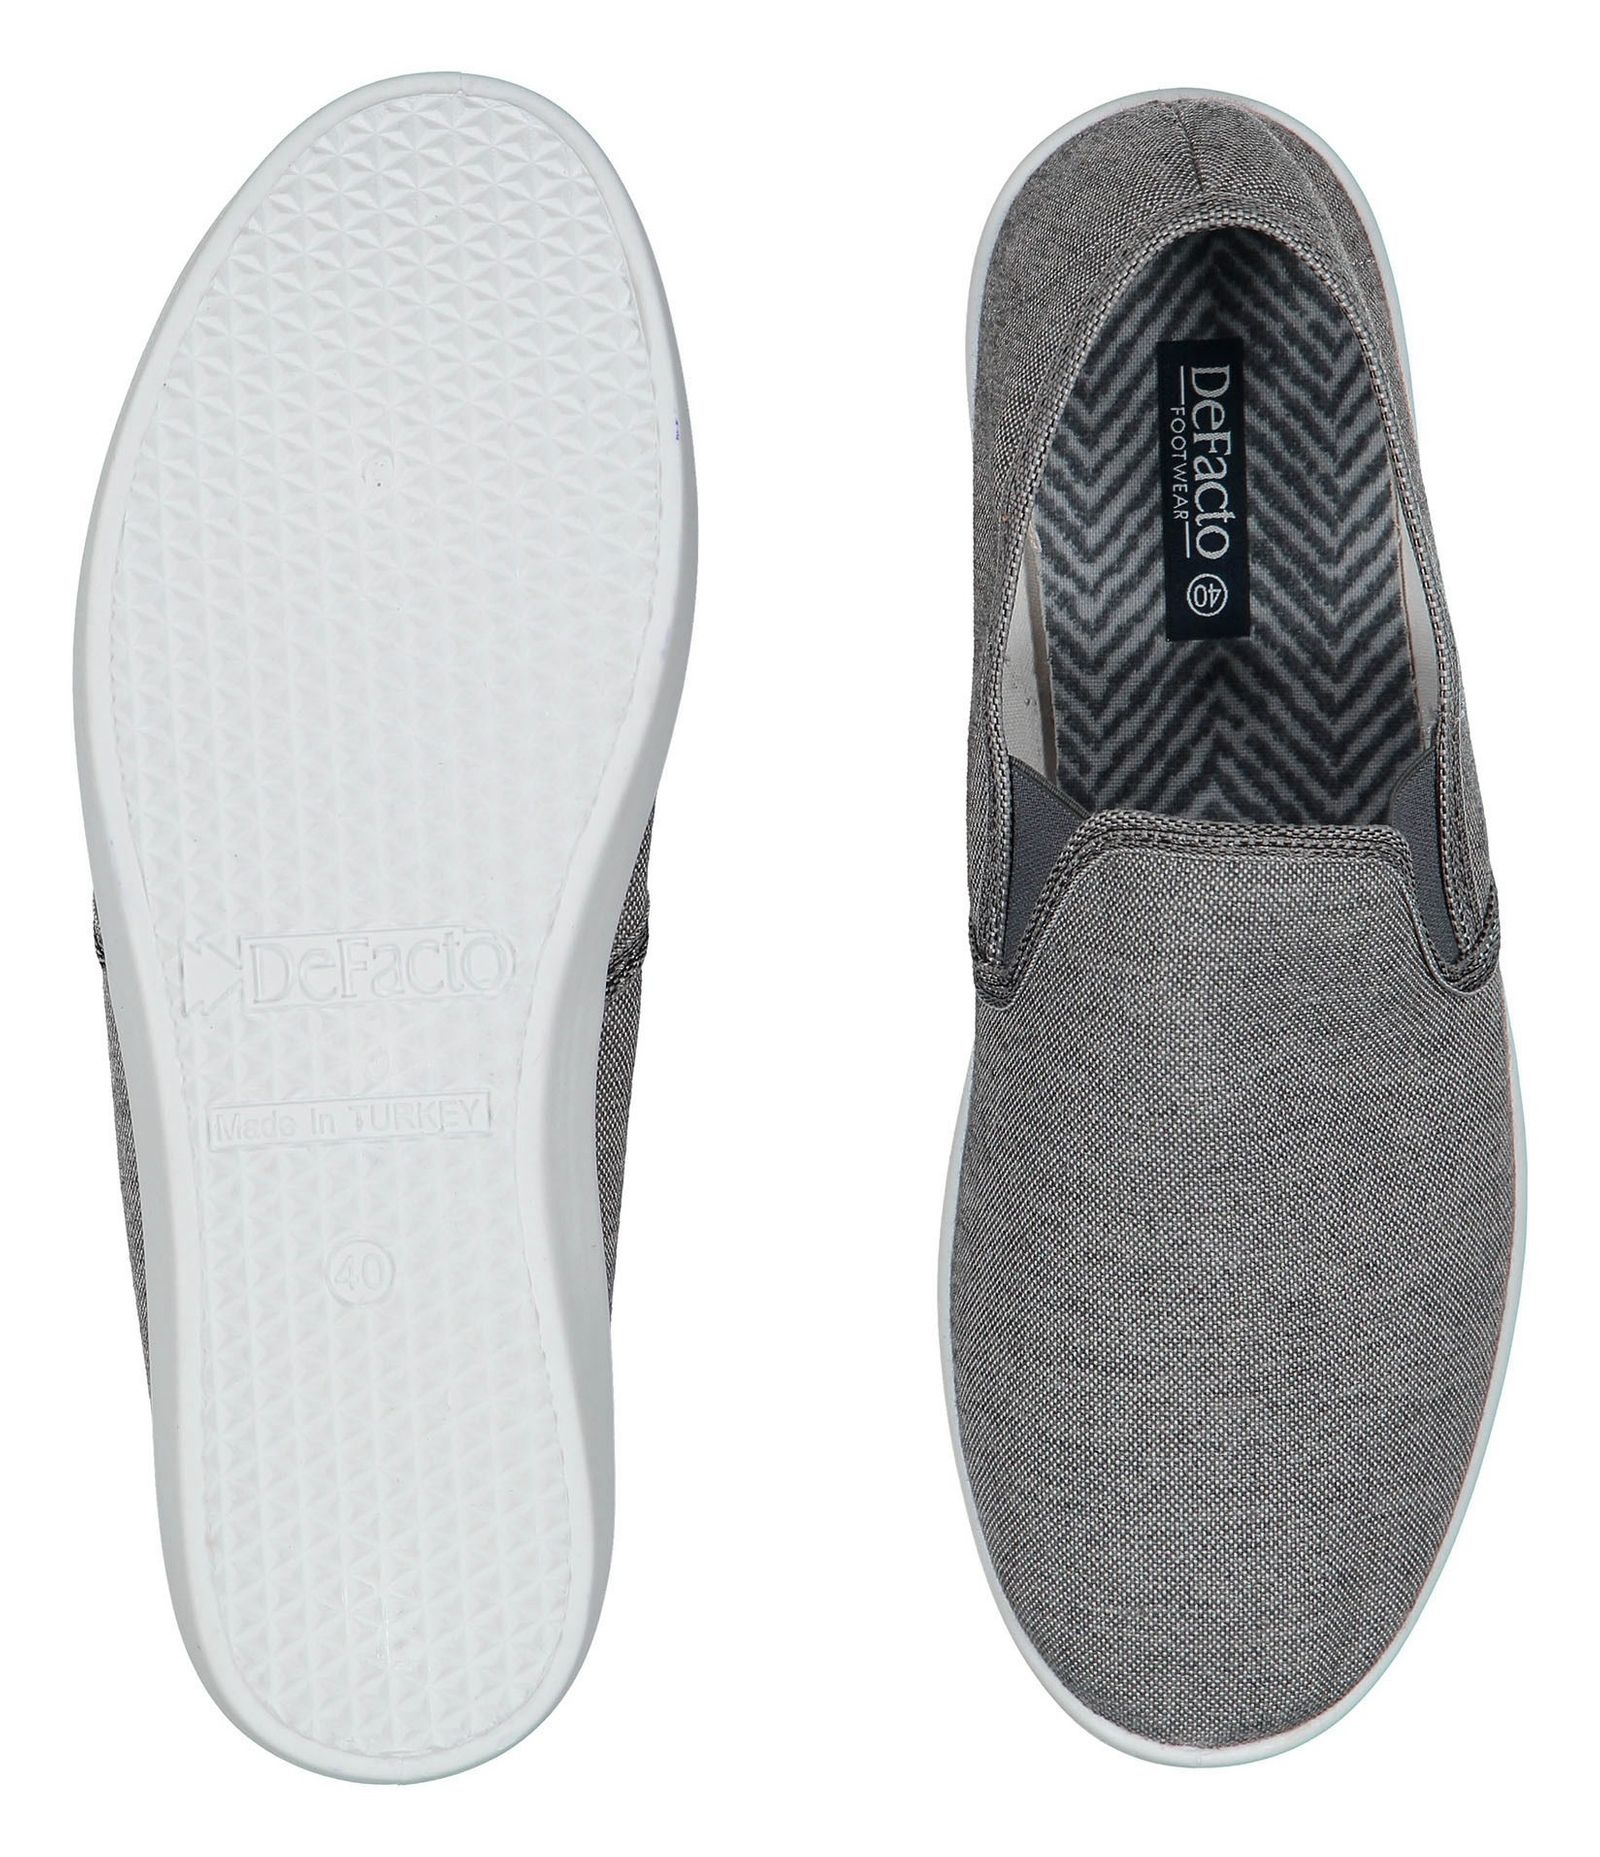 کفش راحتی پارچه ای مردانه - دفکتو - طوسي - 3